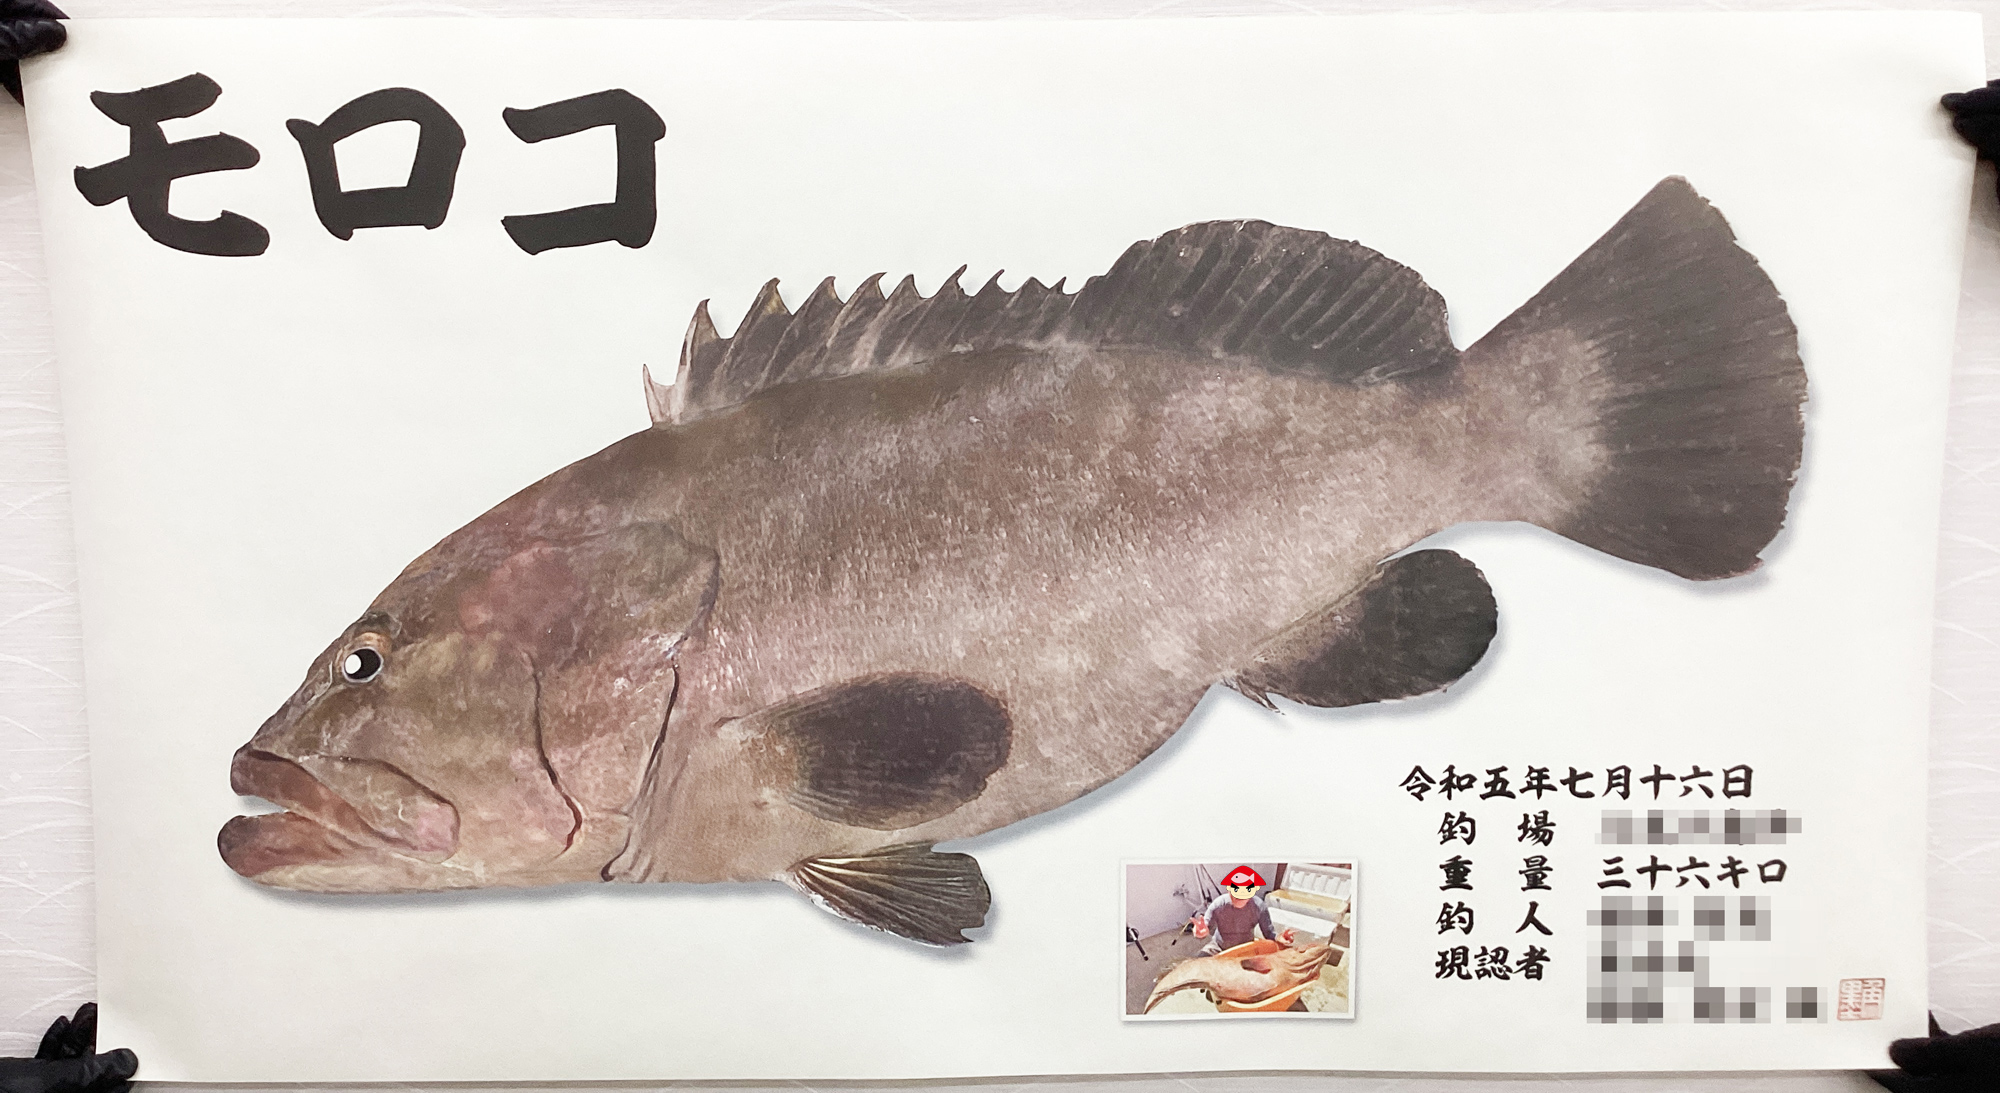 デジタル魚拓作品紹介】カラー魚拓+シャドウ モロコ 36㎏ | 魚墨ブログ